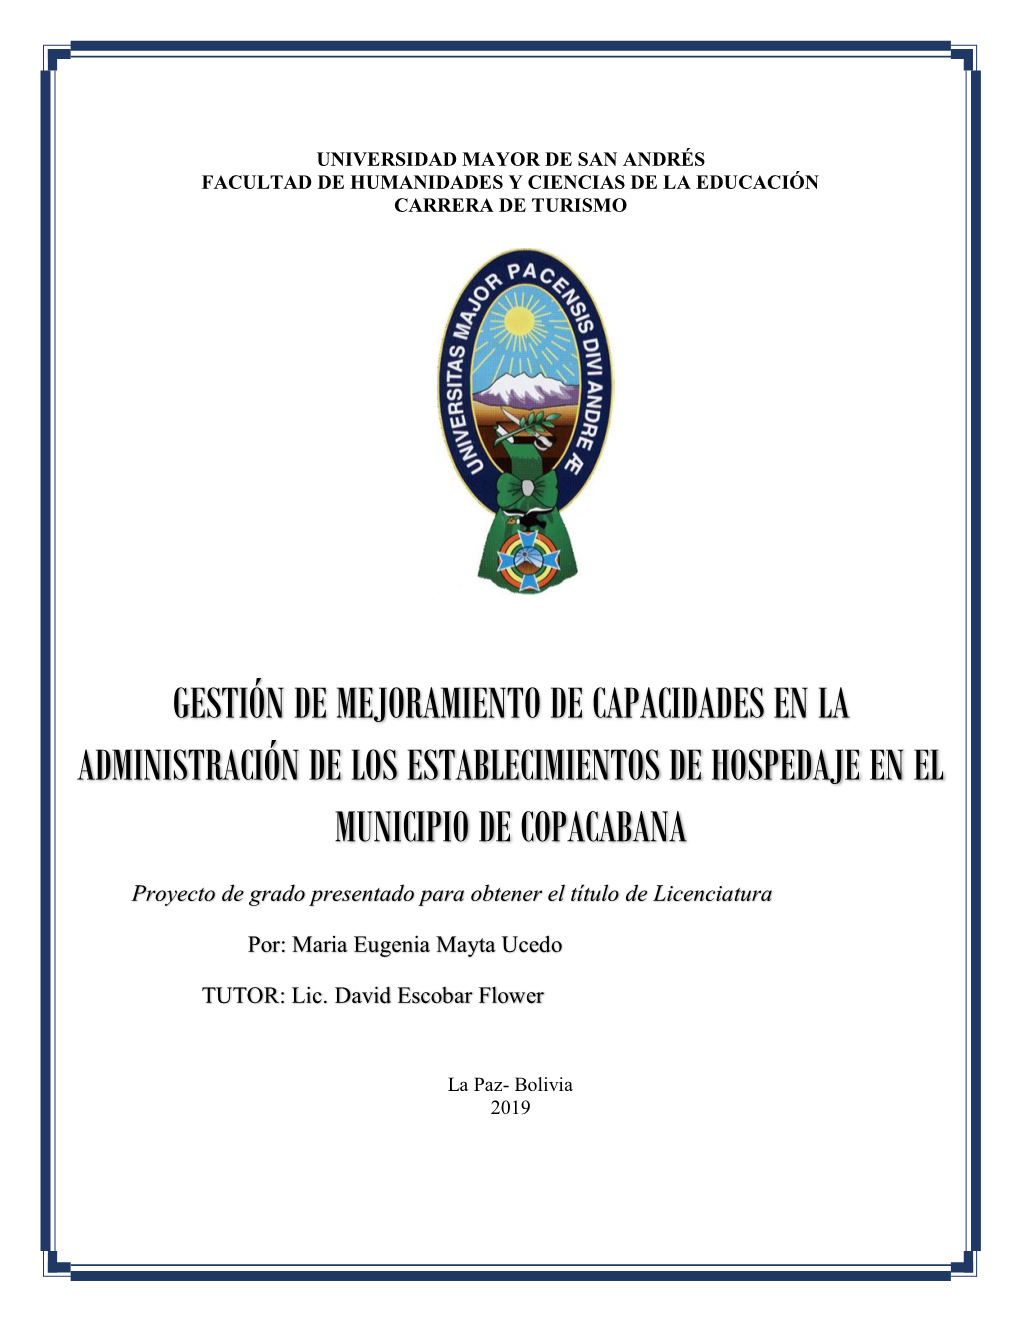 Gestion De Mejoramiento De Capacidades En La Administracion De Los Establecimientos De Hospedaje En El 2019 Municipio De Copacabana